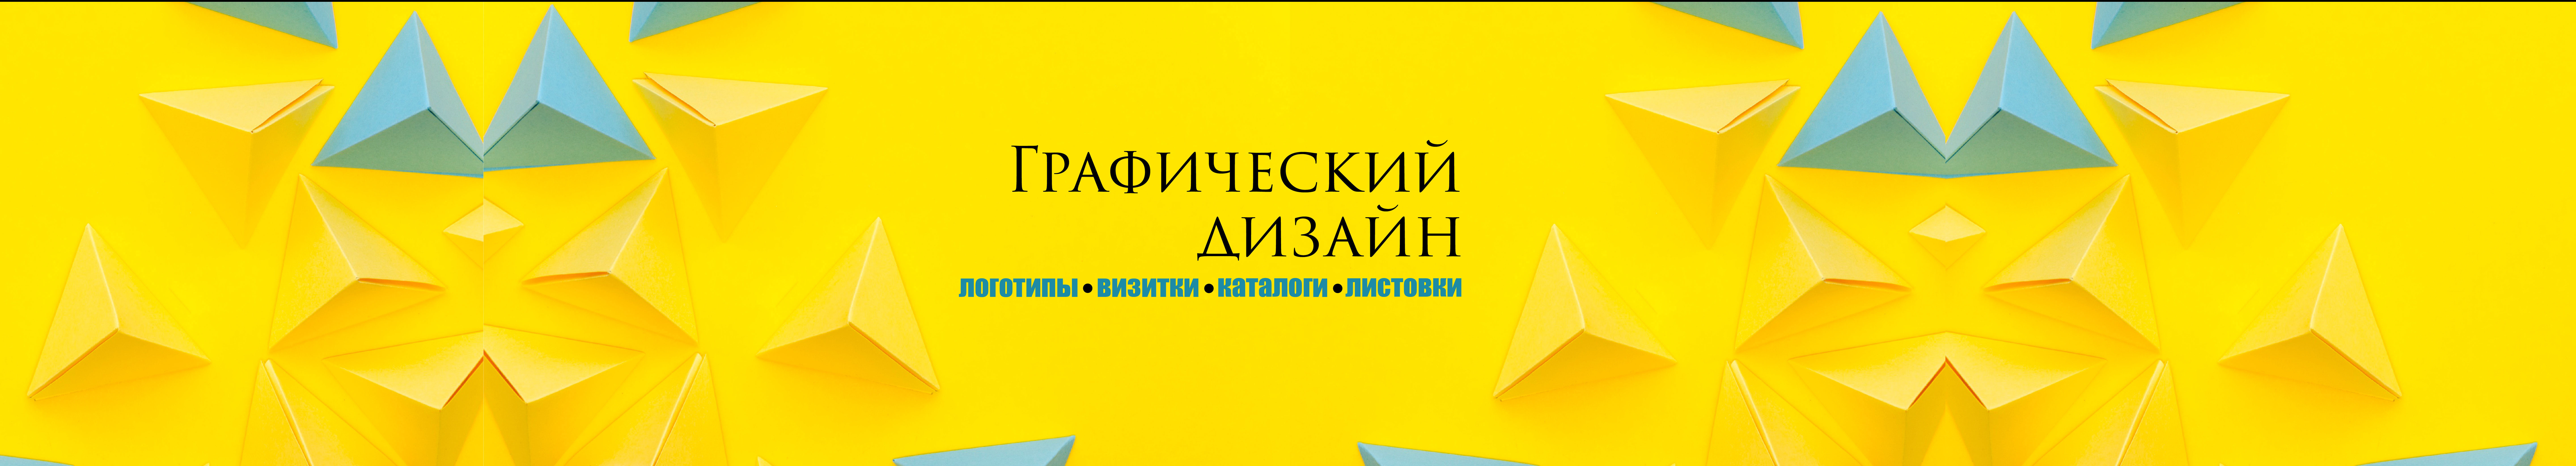 Viktor Urban's profile banner